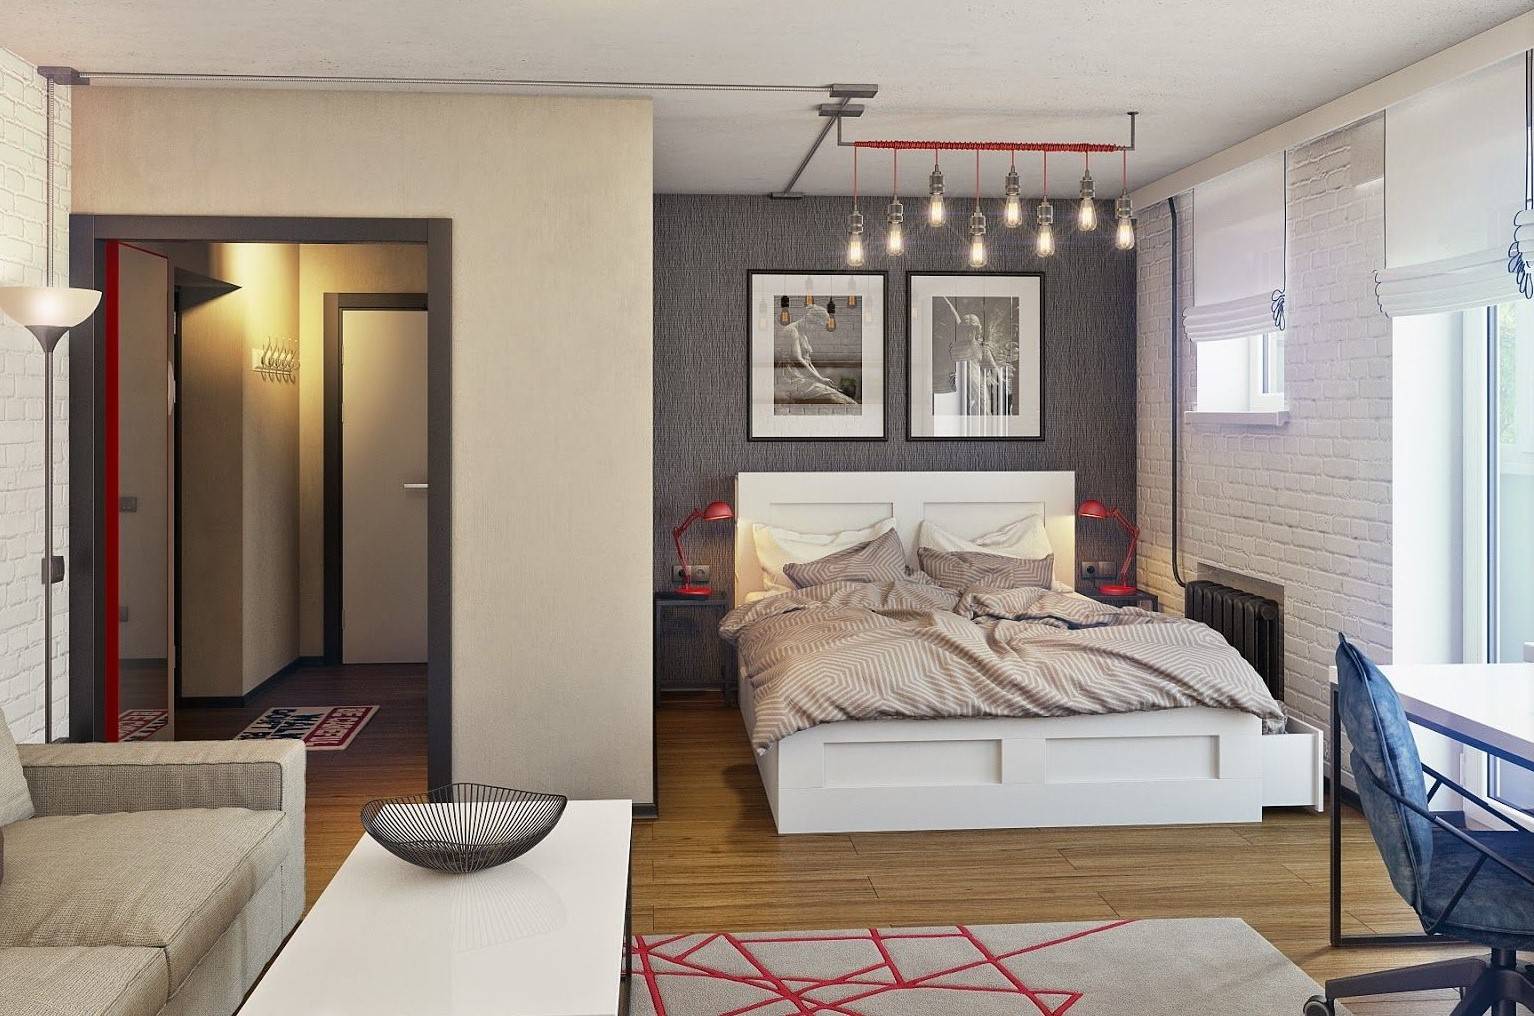 Дизайн кровати в гостиной ( 34 фото): идеи оформления интерьера диваном-трансформером вместо кровати, выбор модели для зала площадью 18 кв. метров